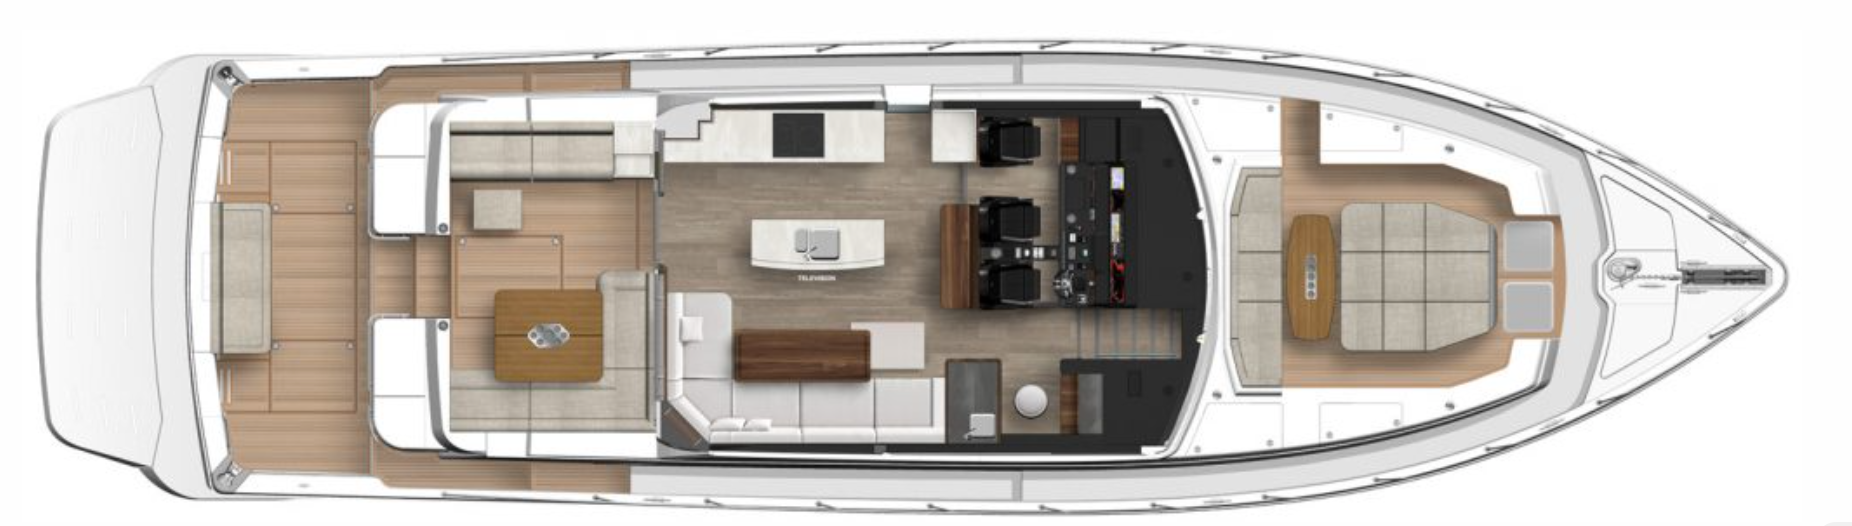 Riviera, 645 SUV Newport plan, optional layout